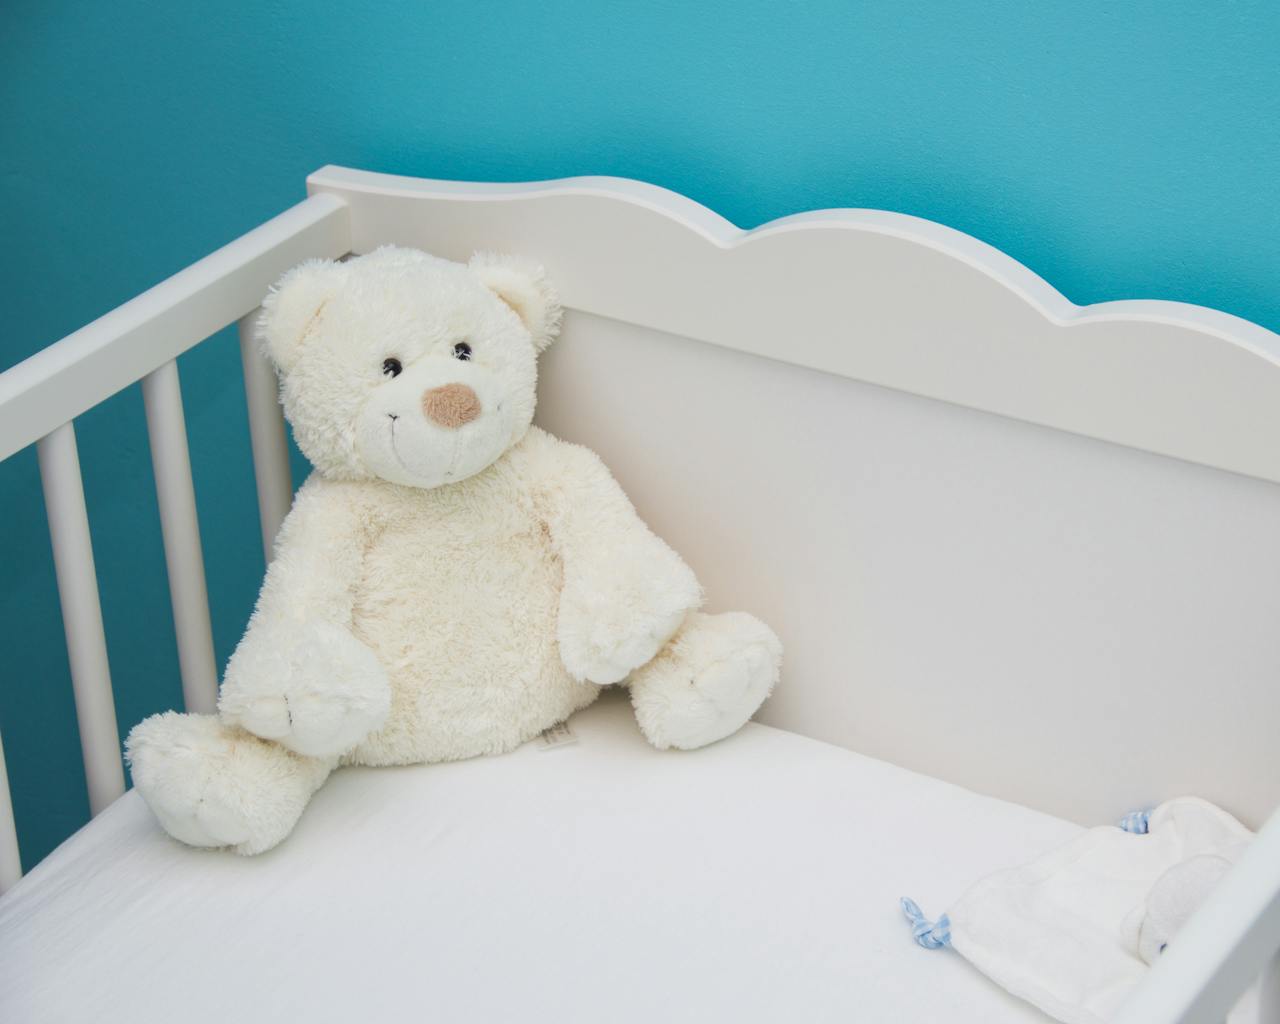 Детская кроватка или манеж Монтессори — что выбрать?